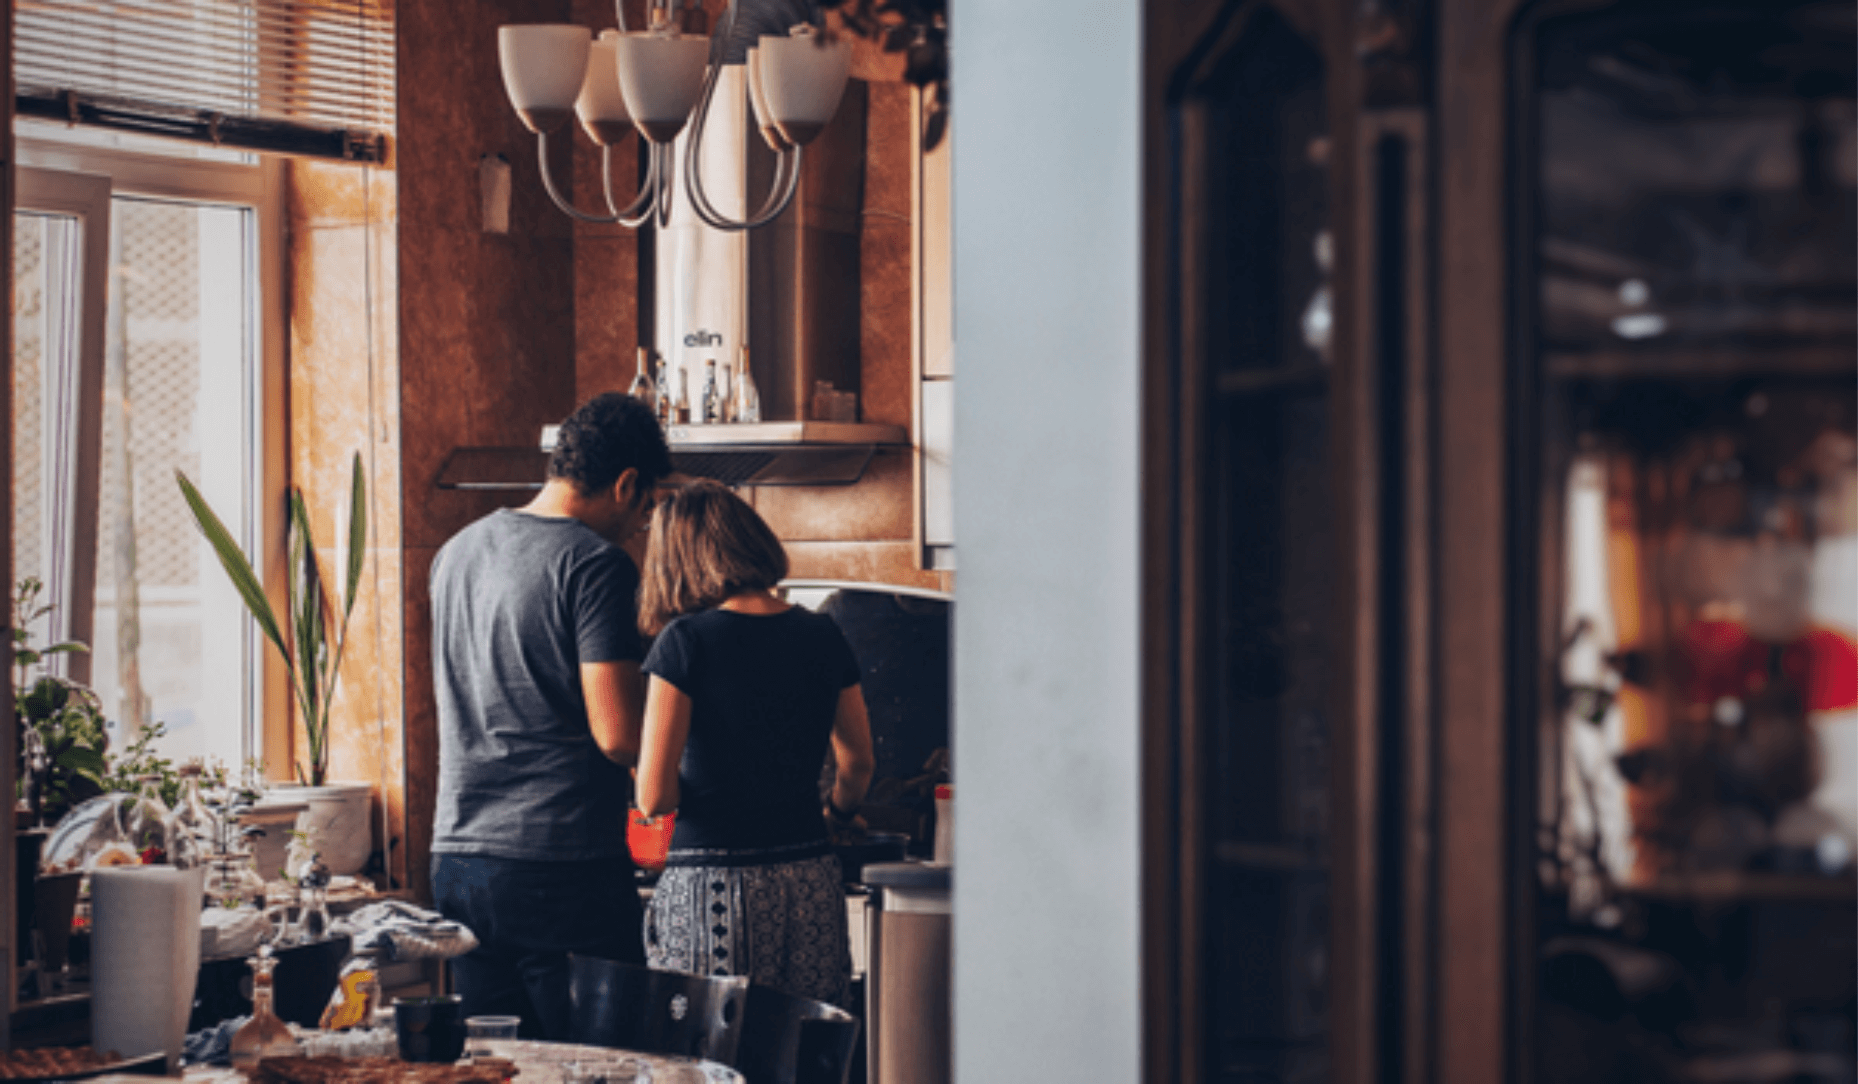 Couple en location en train de cuisiner ensemble